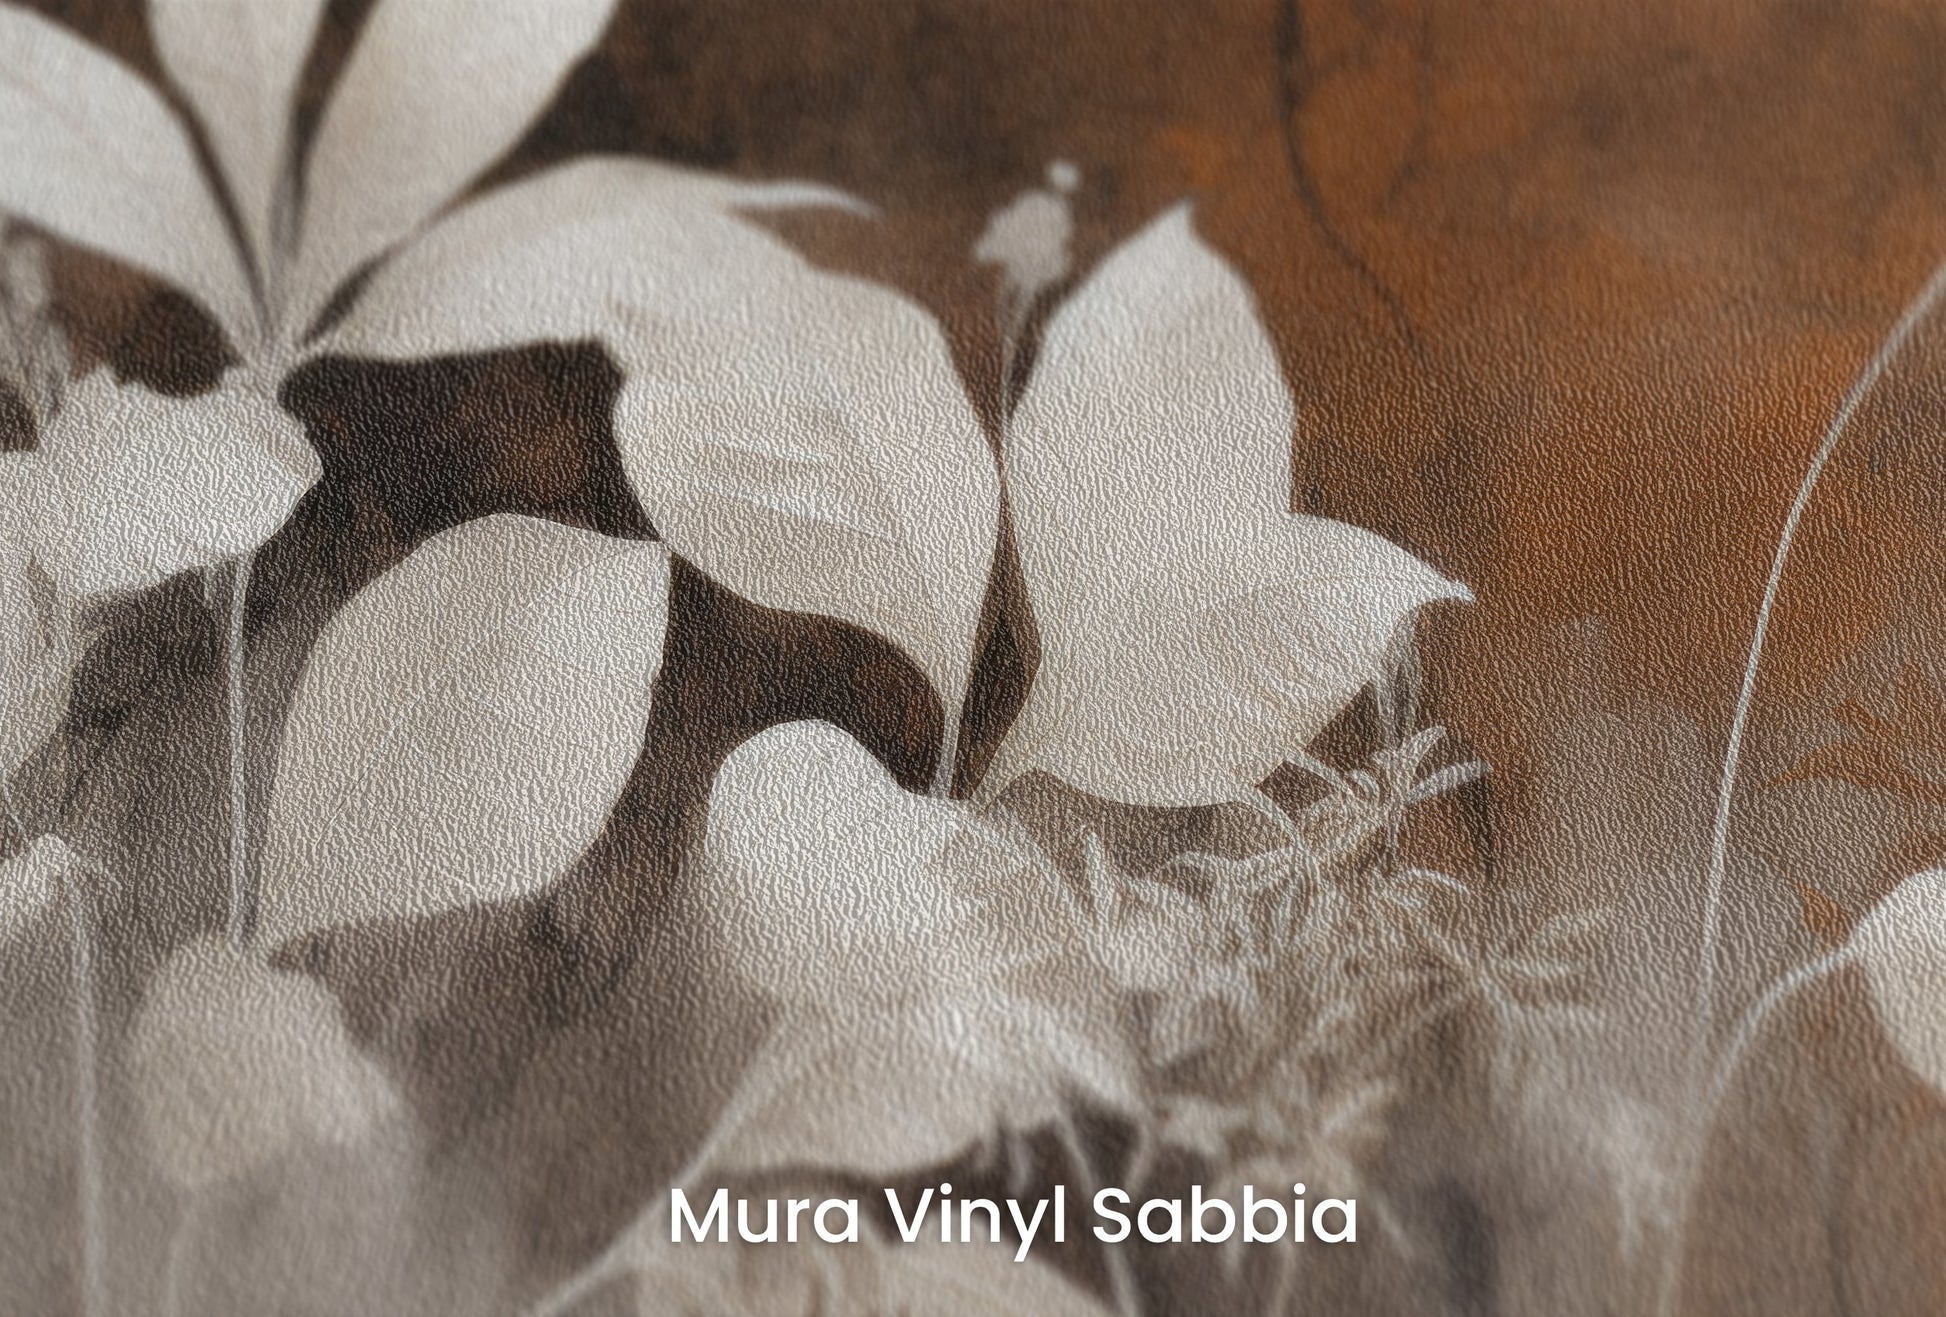 Zbliżenie na artystyczną fototapetę o nazwie Bronze Leaf Silhouettes na podłożu Mura Vinyl Sabbia struktura grubego ziarna piasku.